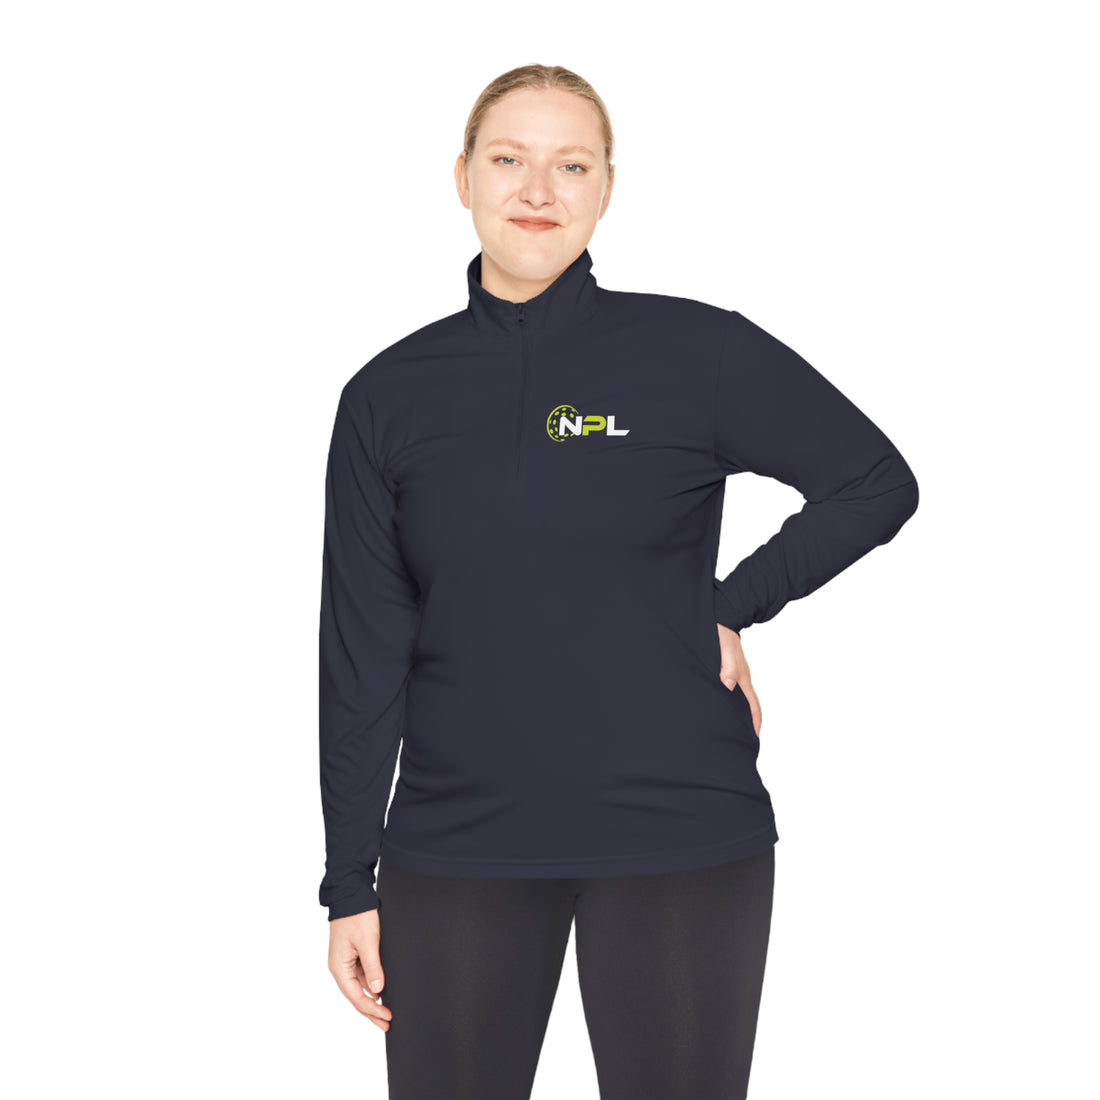 NPL™ Unisex Quarter-Zip Long Sleeve Shirt